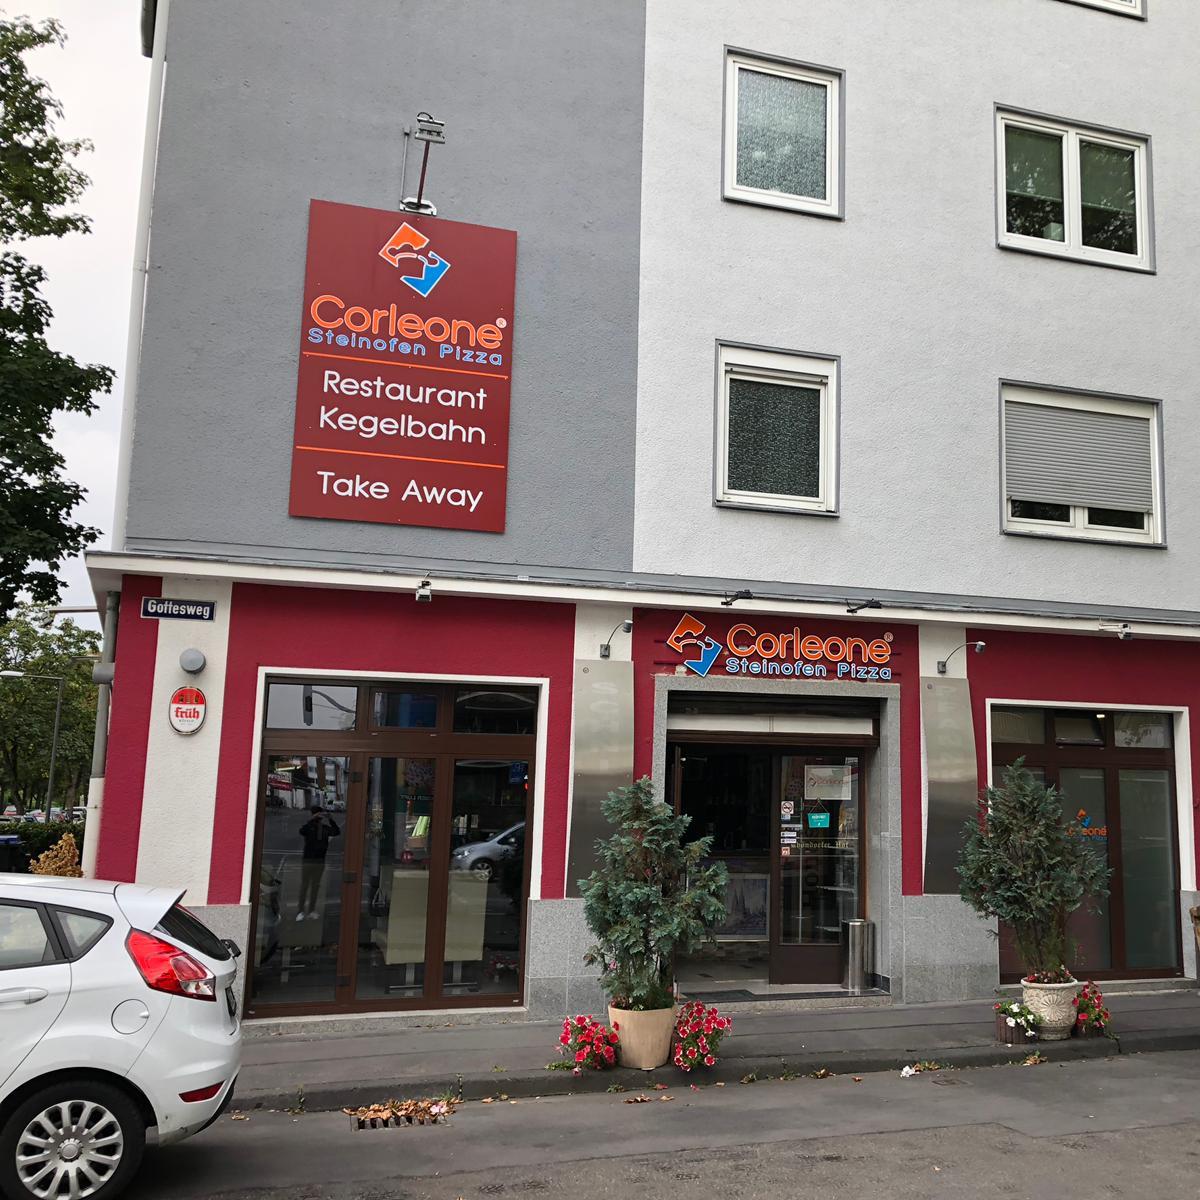 Restaurant "Corleone - Steinofen Pizza" in Köln